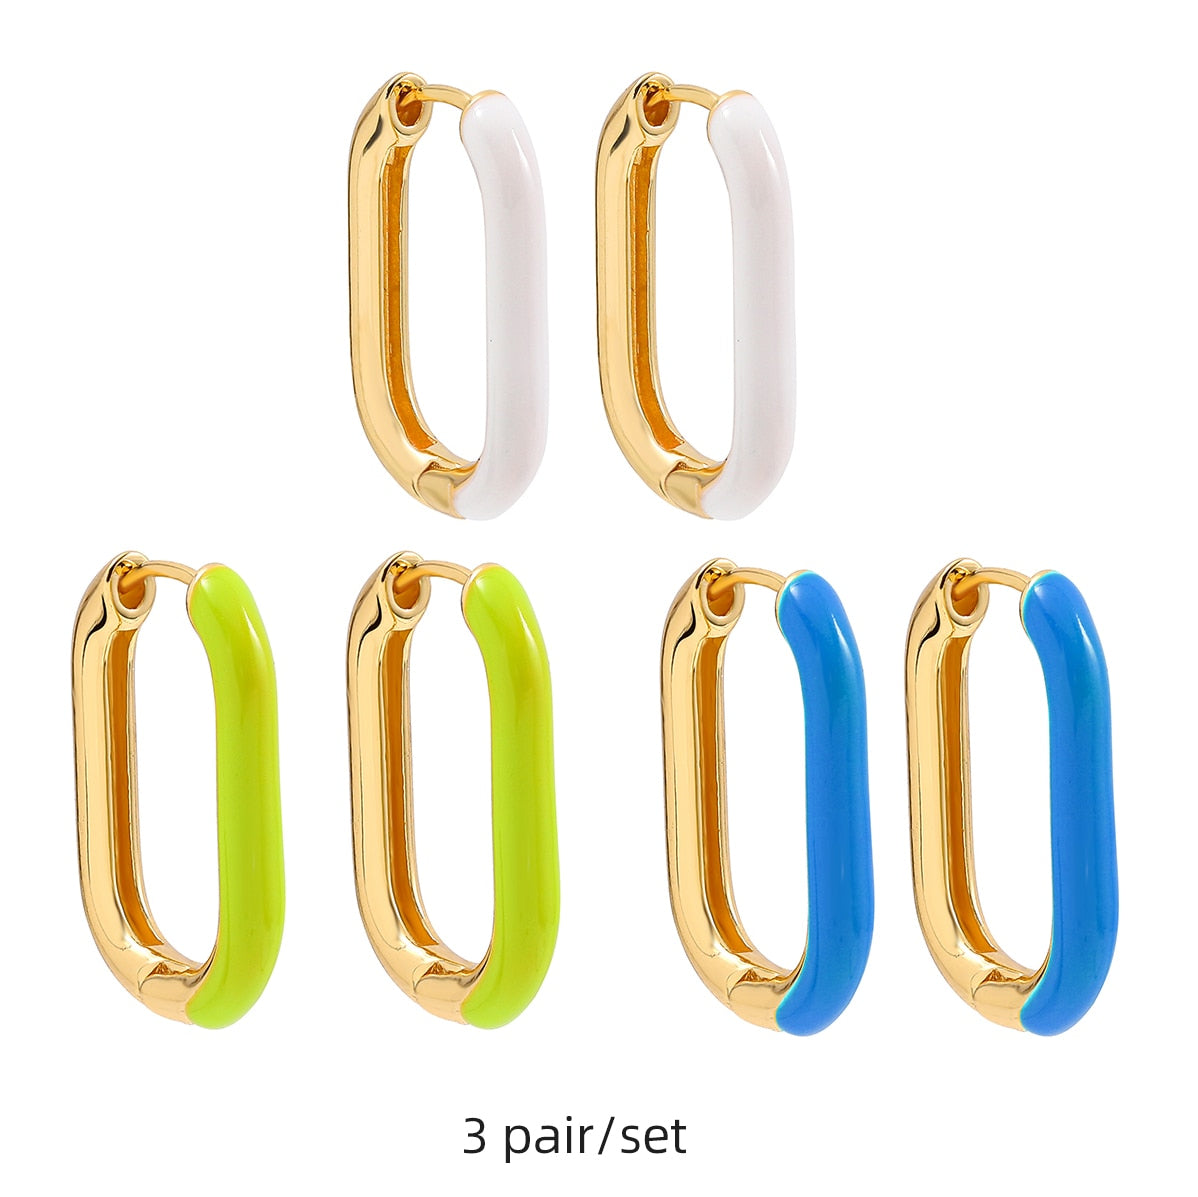 Boho Multicolour Earrings